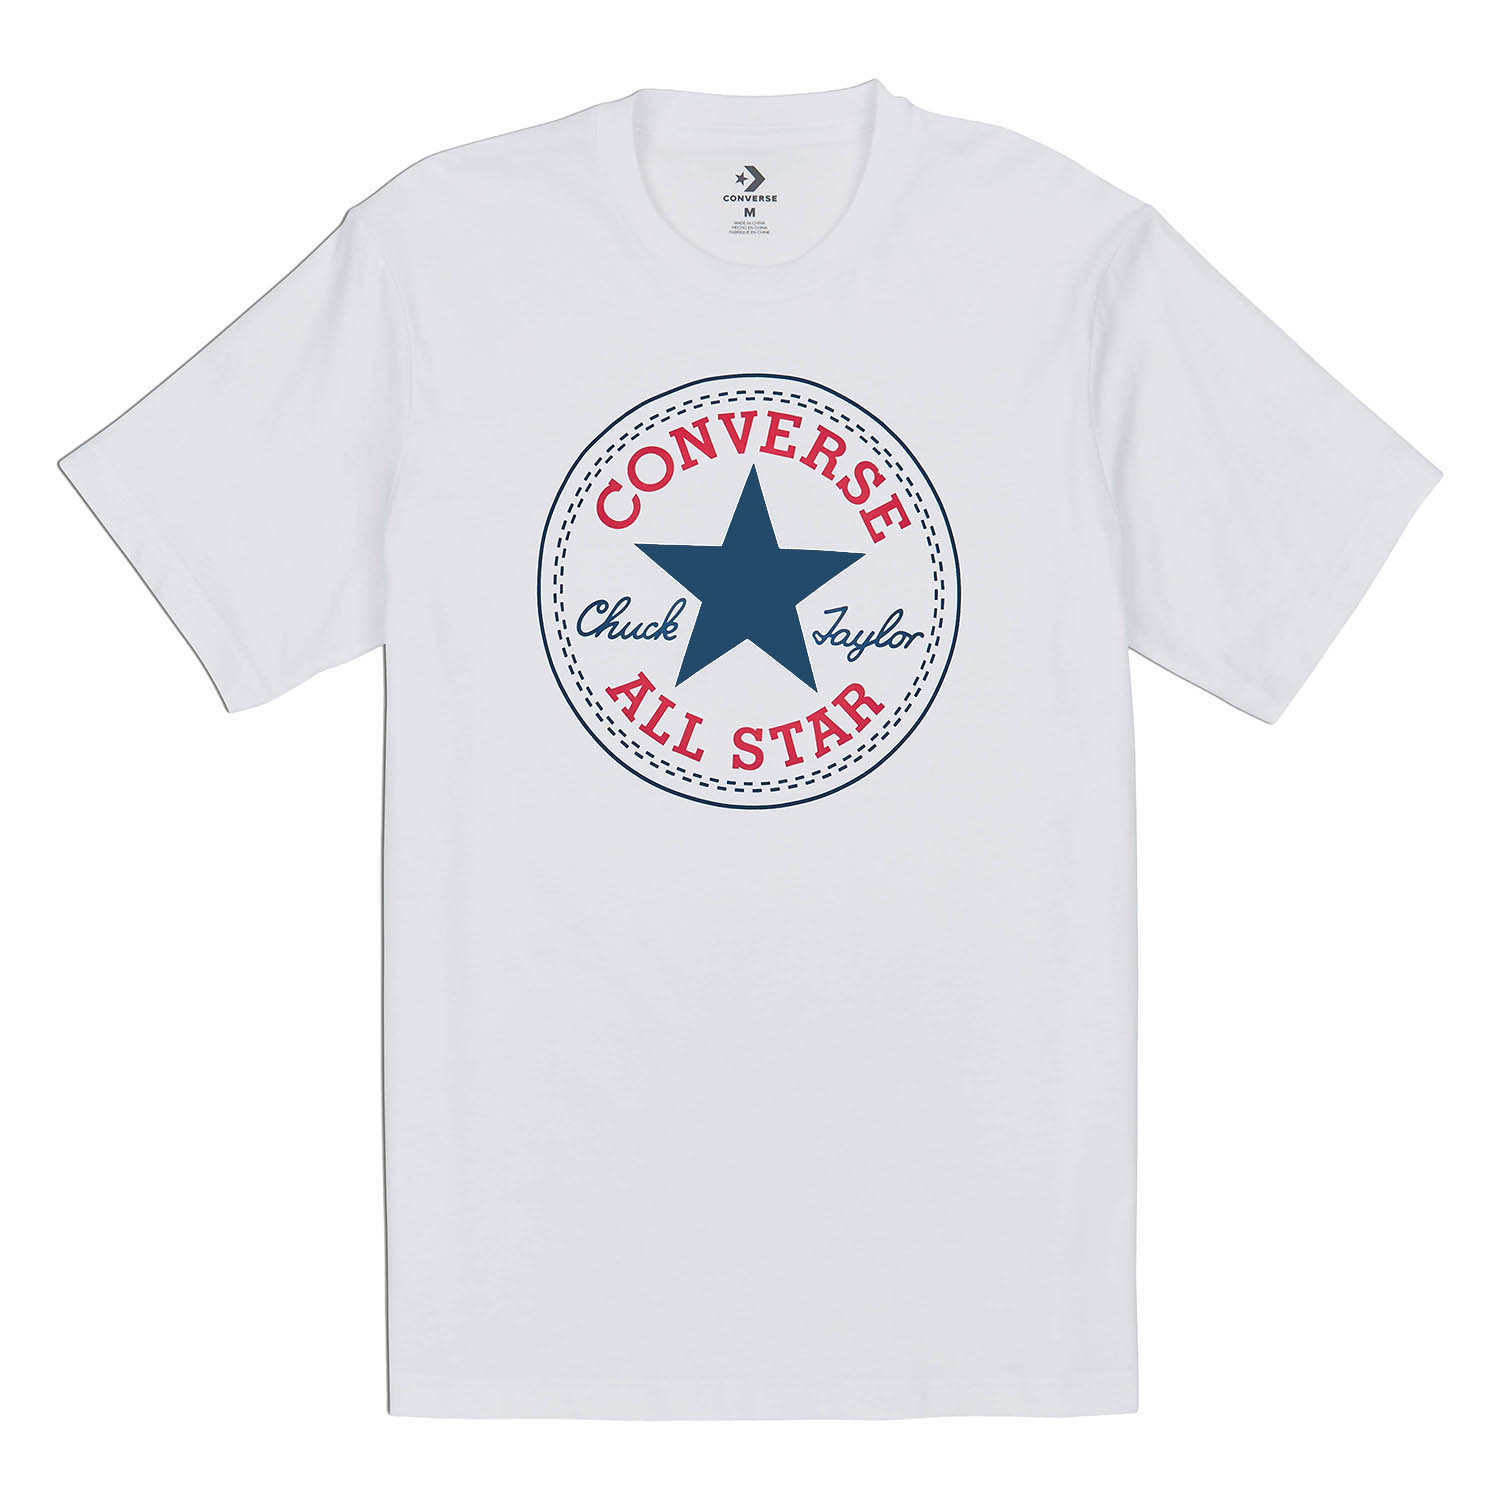 Converse Chuck Patch Tee Herren T-Shirt 10007887 Weiß